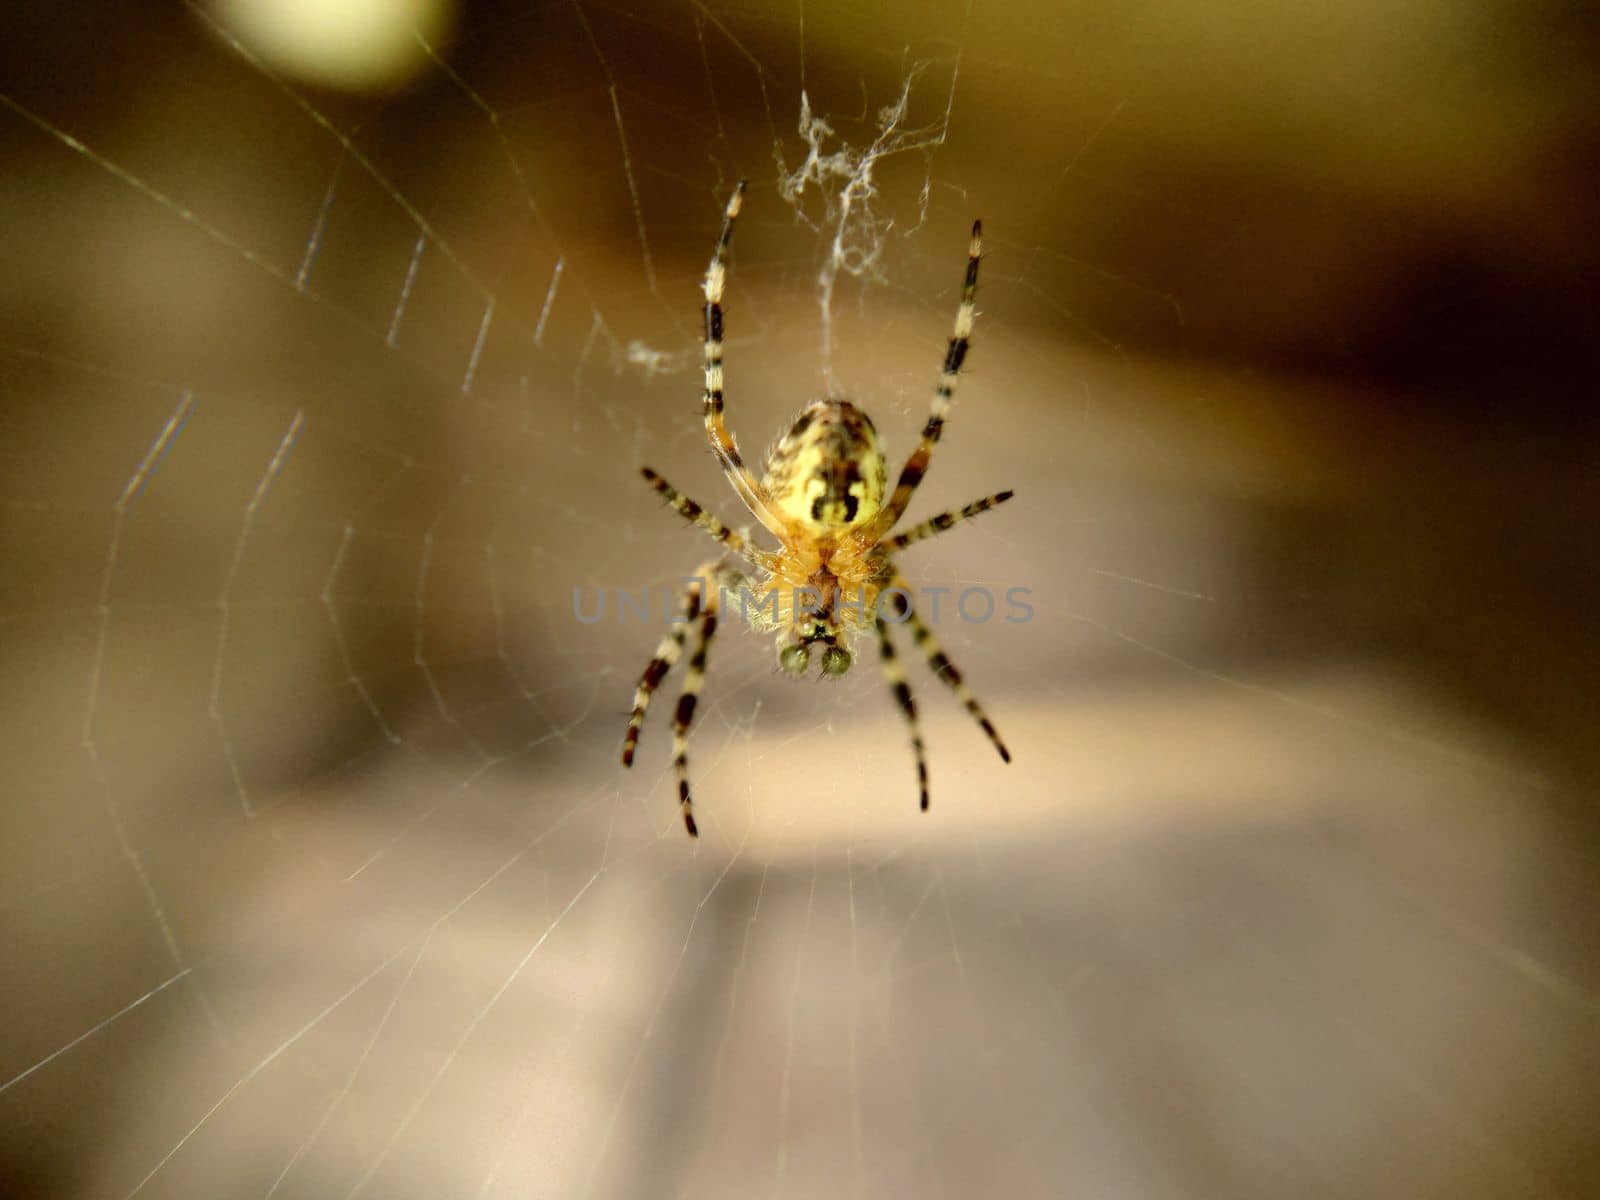 Garden striped spider with green round eyes by Mastak80